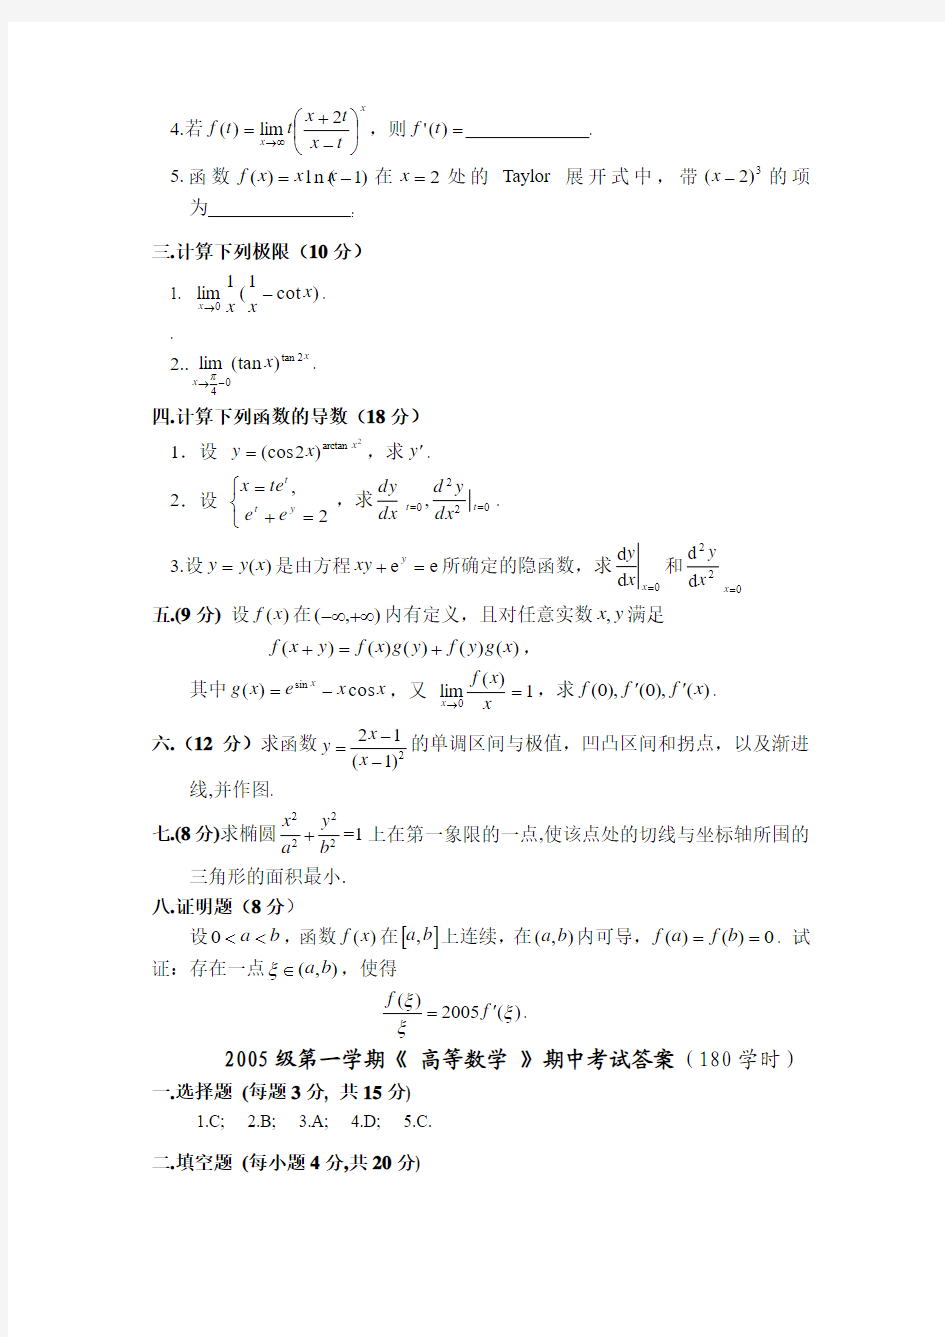 武汉大学数学与统计学院2005-2006年第一学期《高等数学》期末考试试题